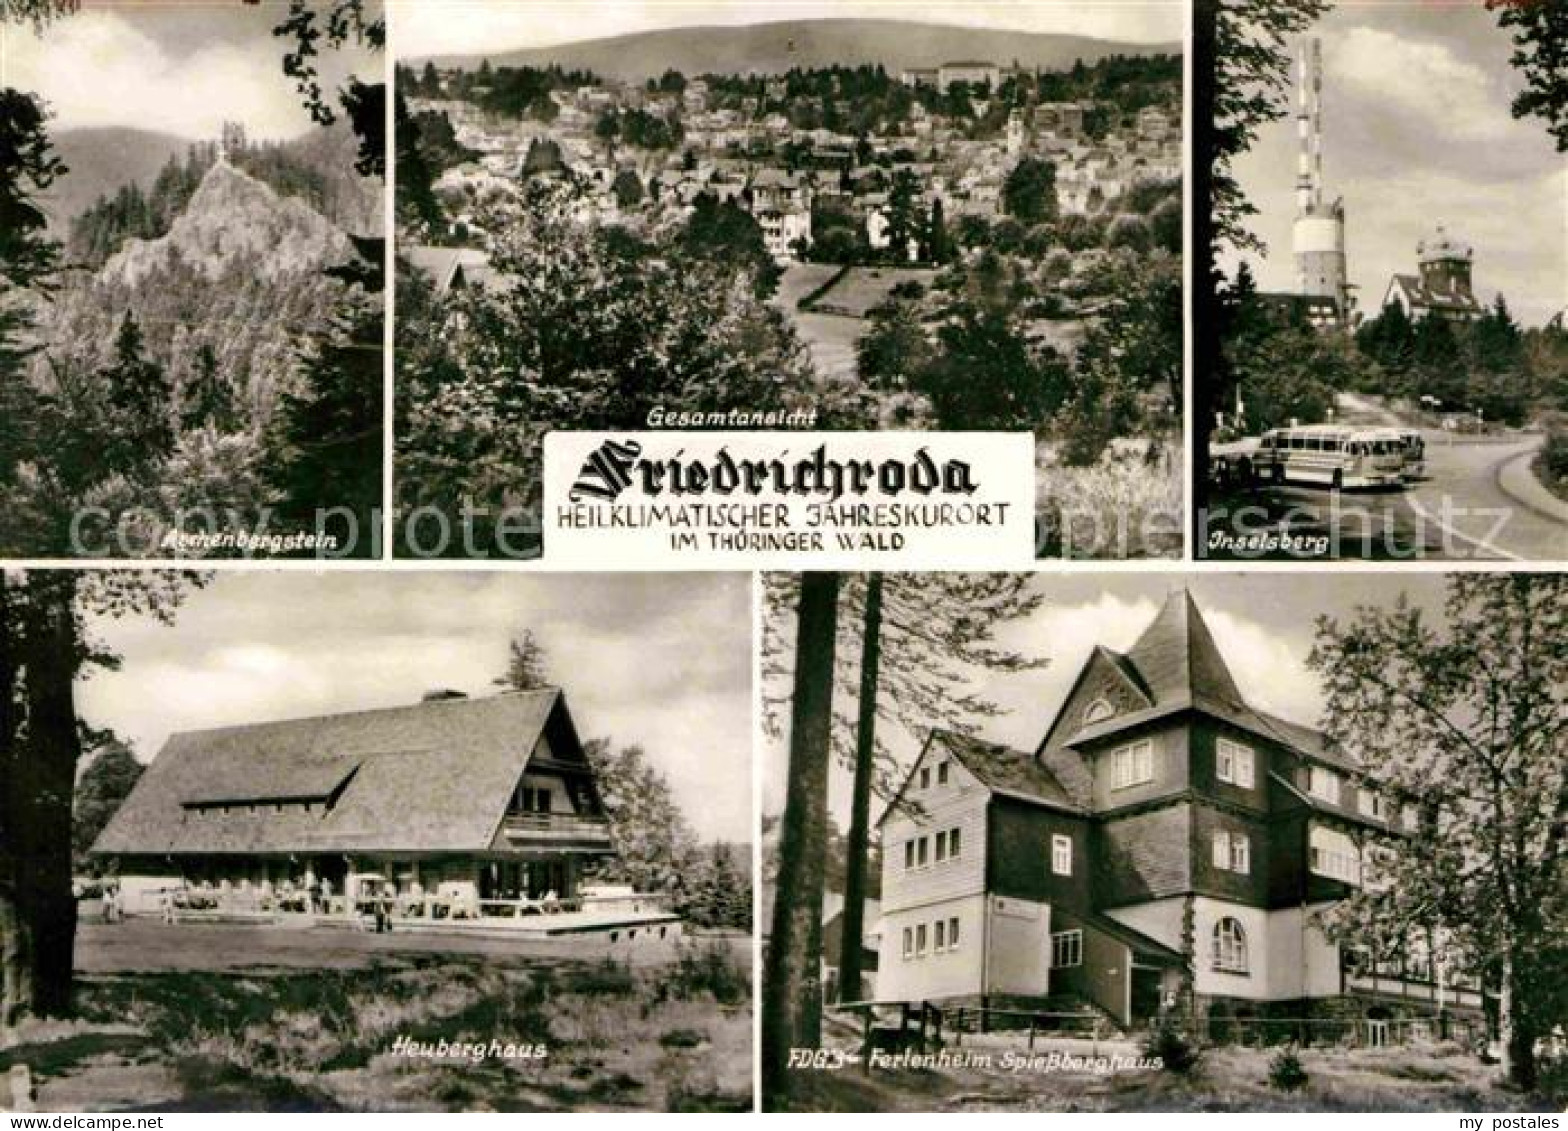 72637012 Friedrichroda Aschenbergstein Heuberghaus Ferienheim Spiessberghaus Ins - Friedrichroda